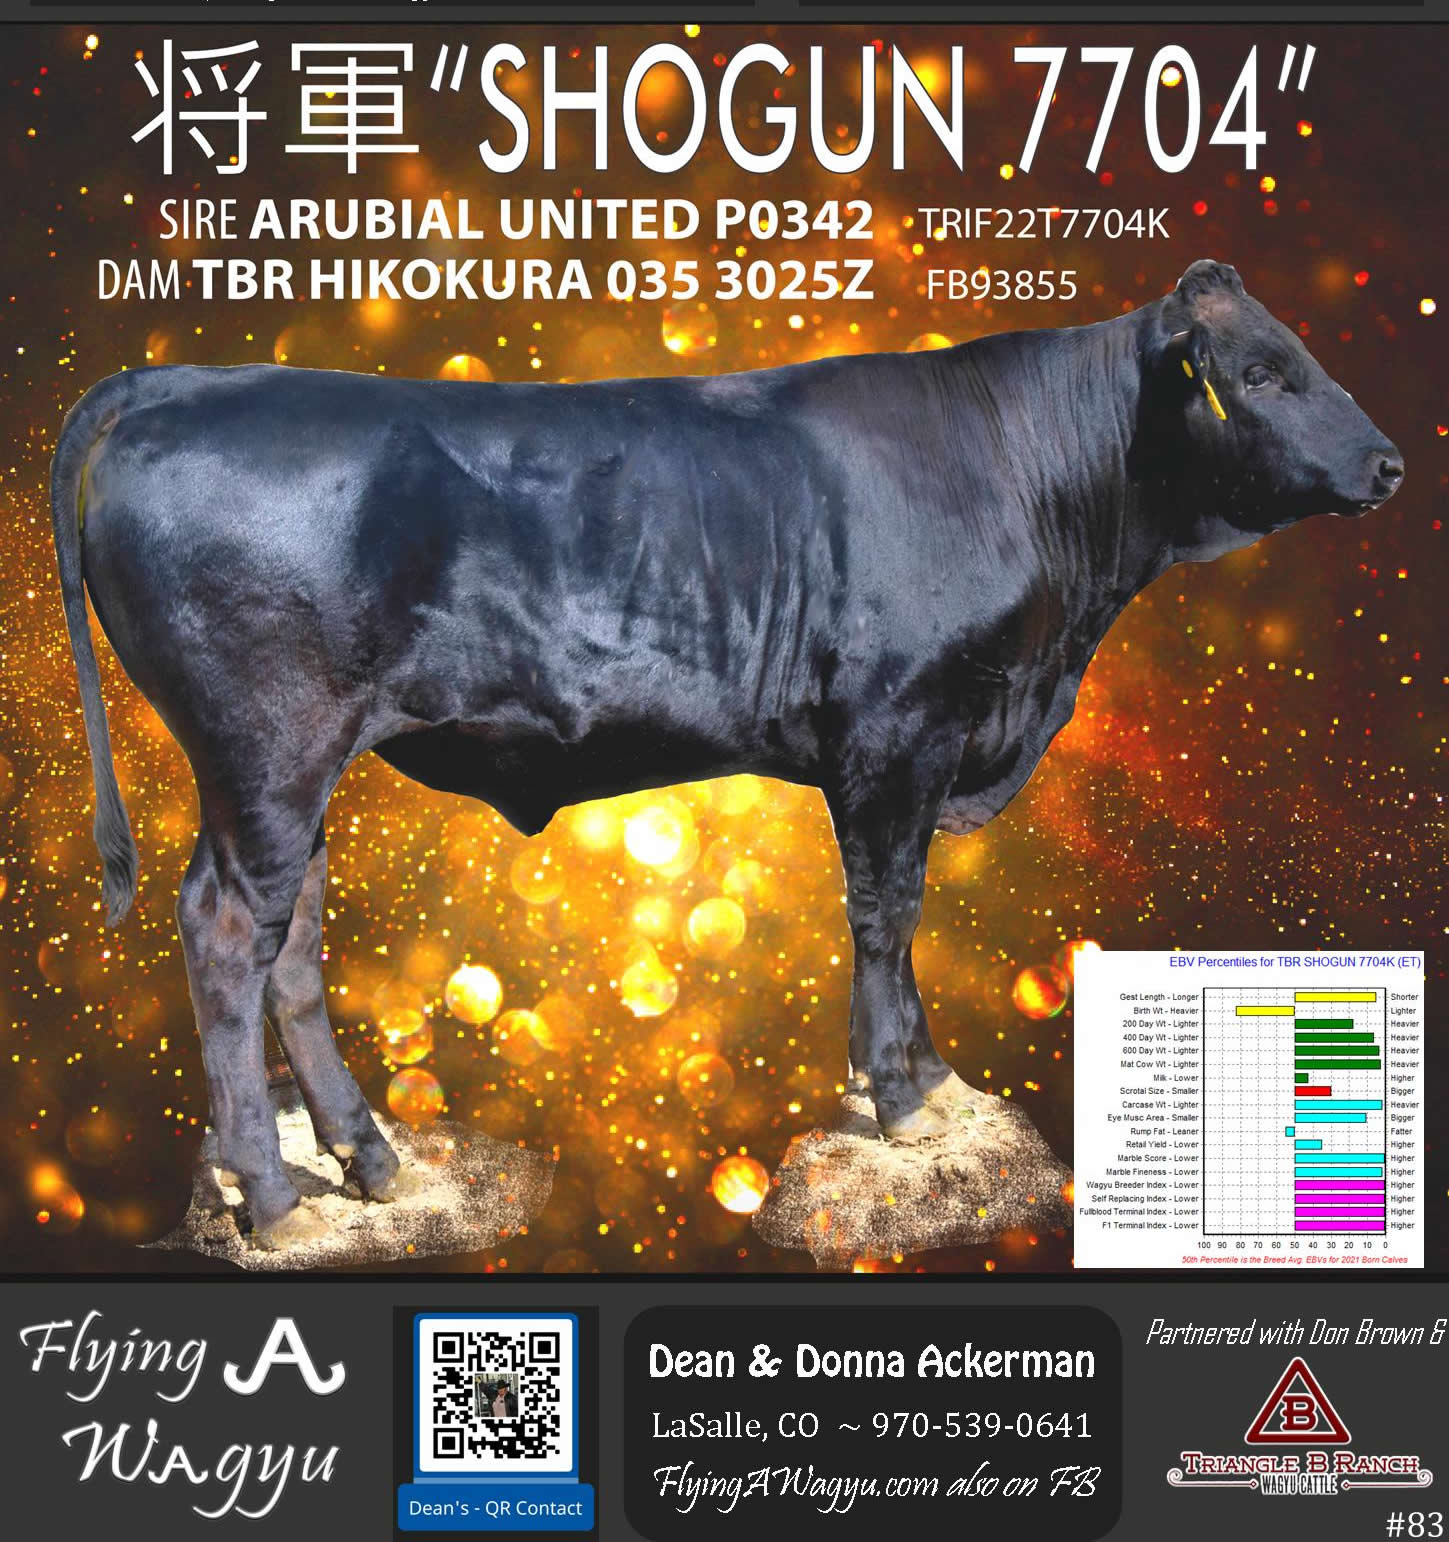 Shogun 7704 - Flying A Wagyu 100% Full Blood Black Wagyu